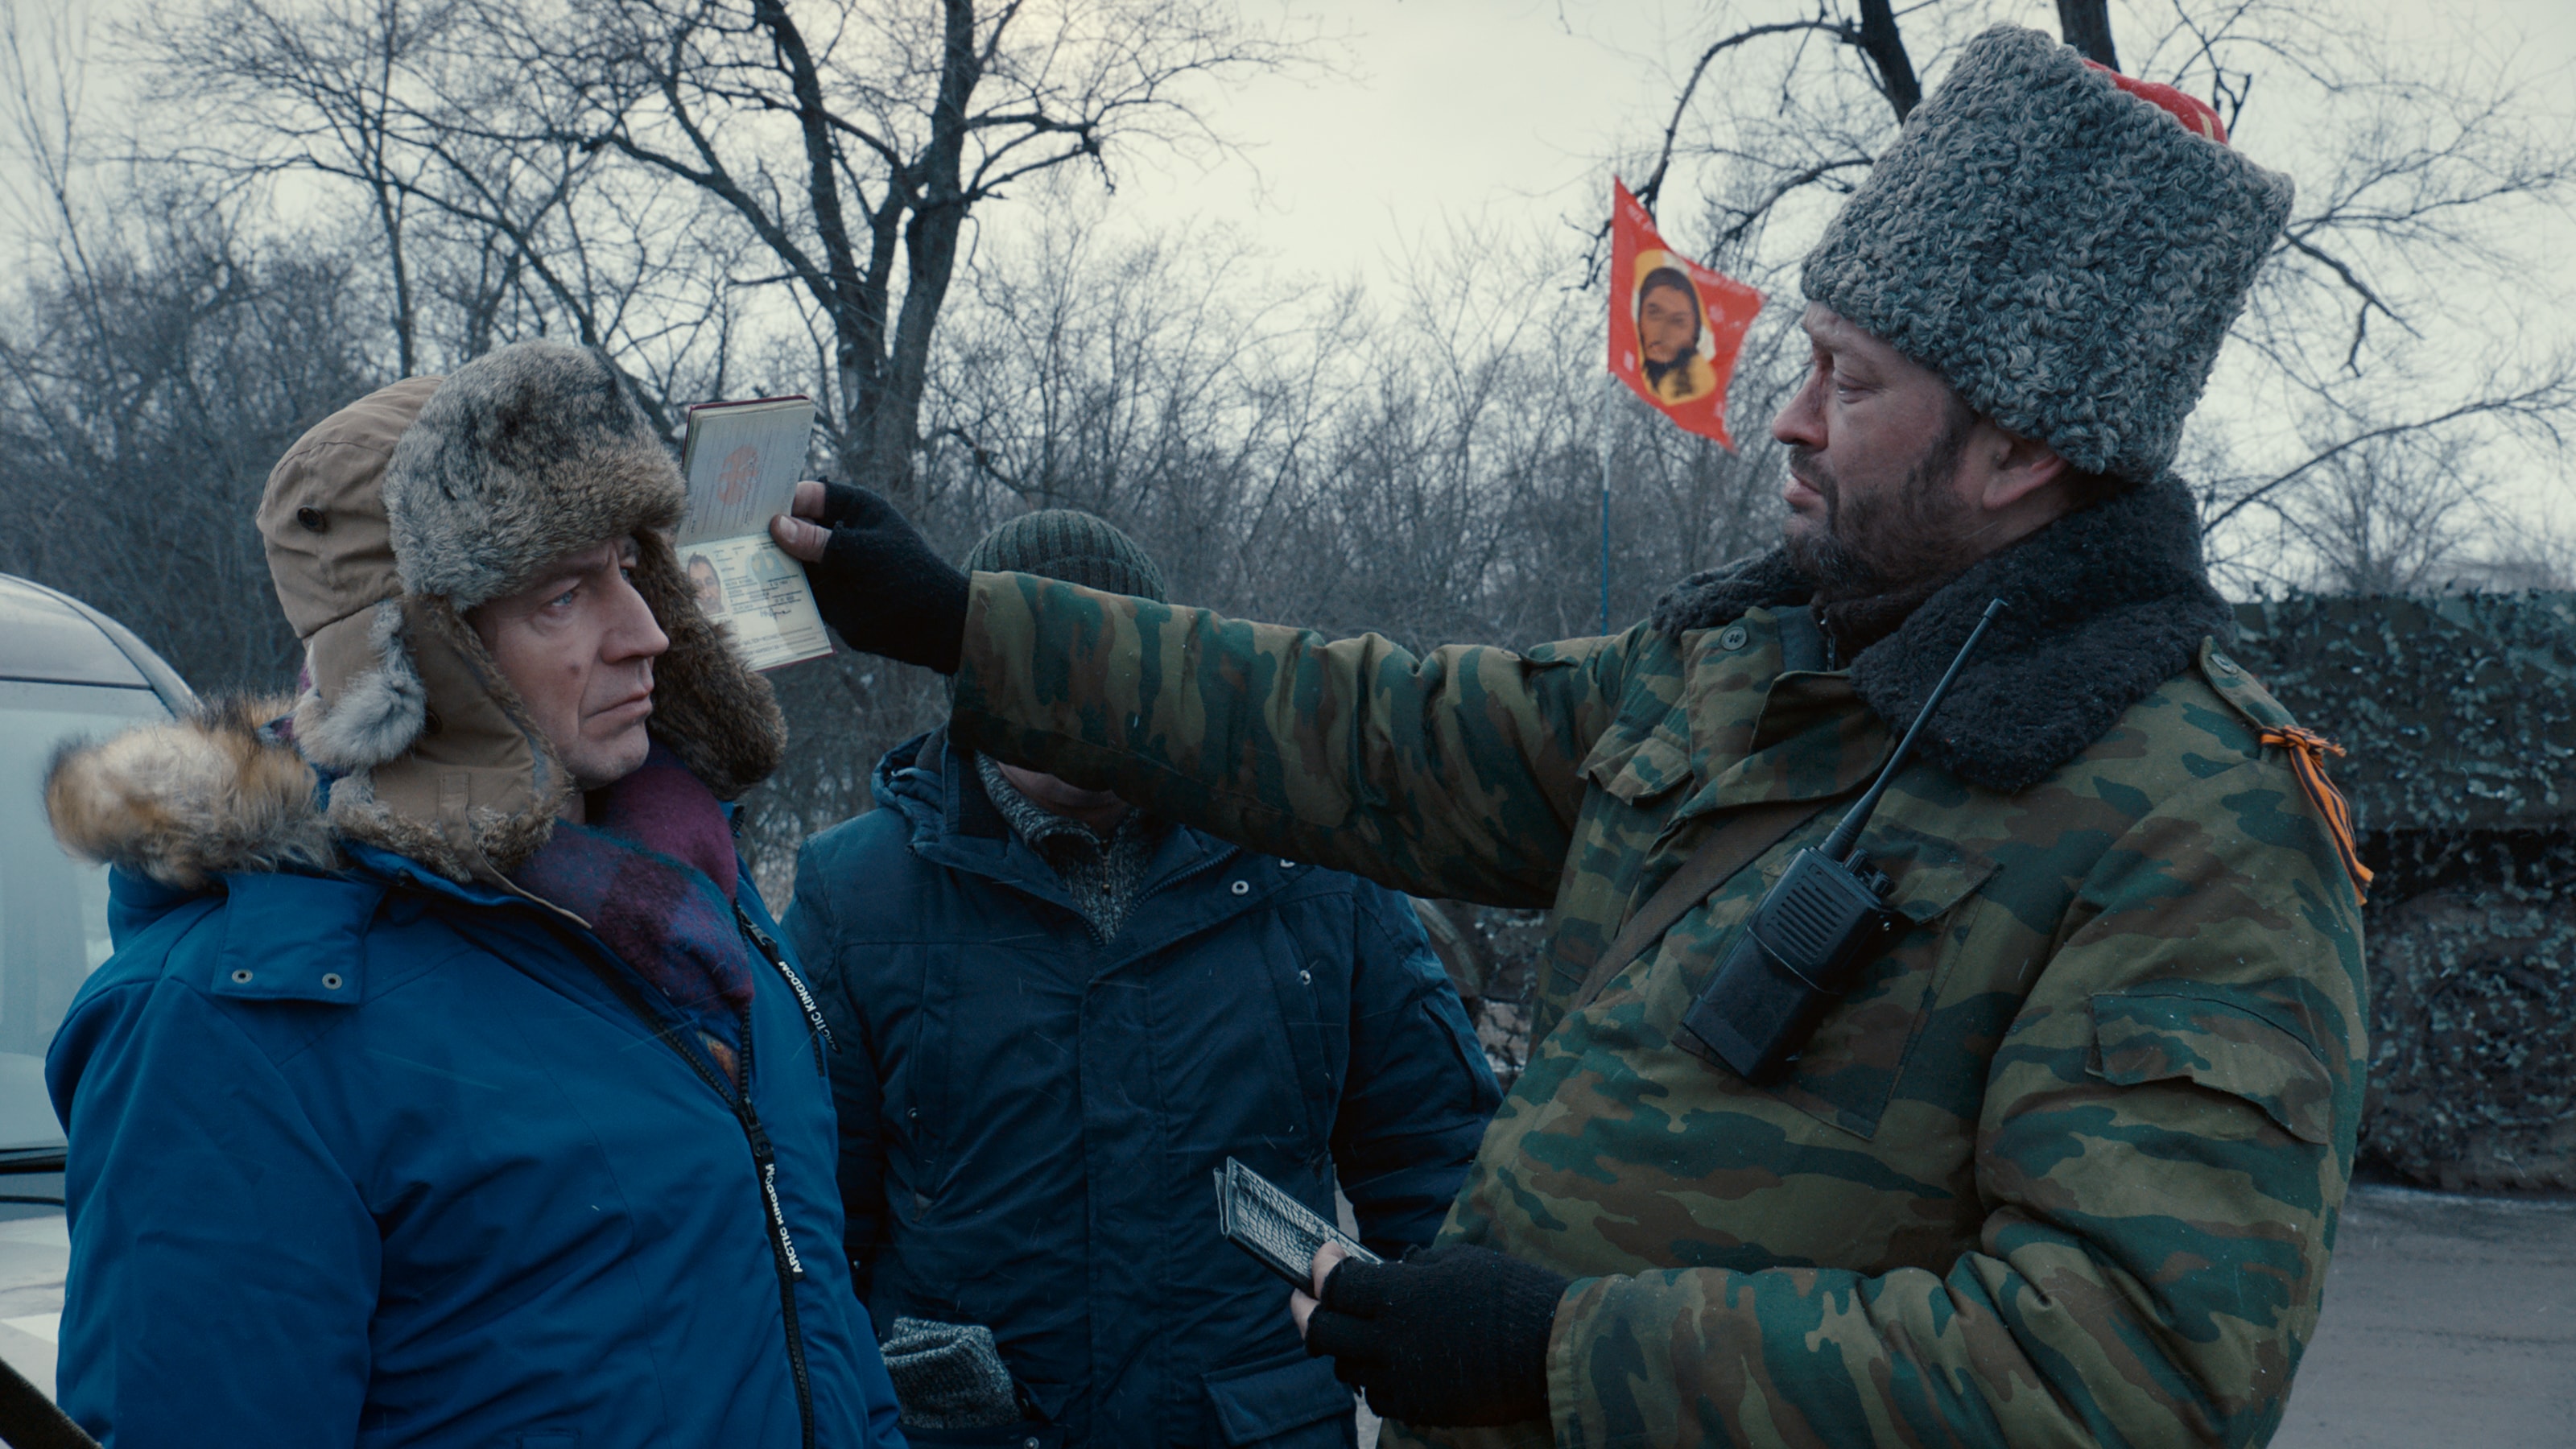 Сергей Лозница высказался против дублирования его фильма «Донбасс» на украинском языке  (ДОПОЛНЕНО)